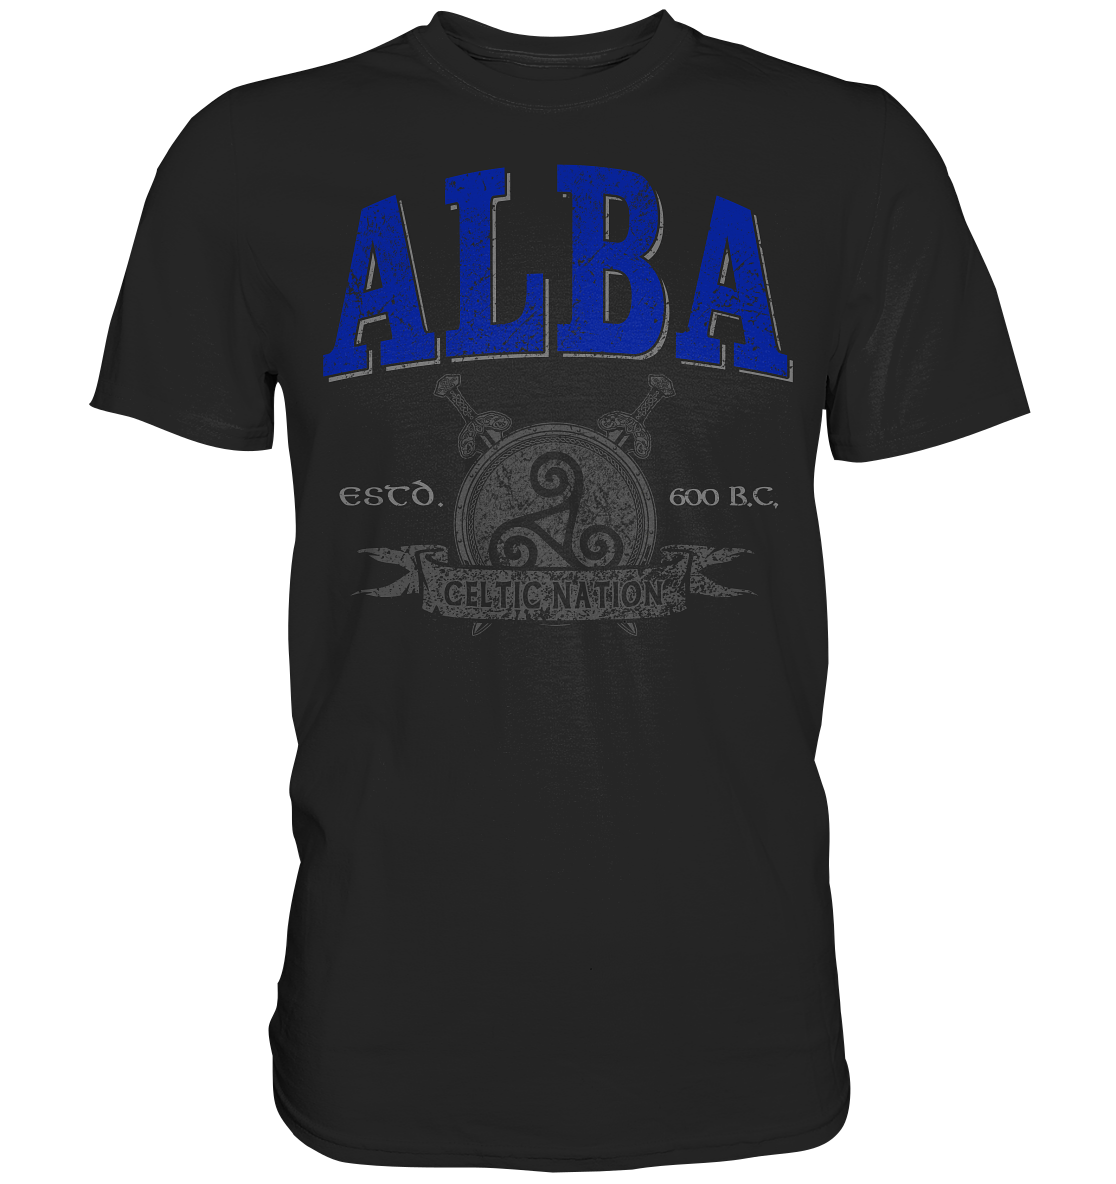 Alba "Celtic Nation" - Premium Shirt